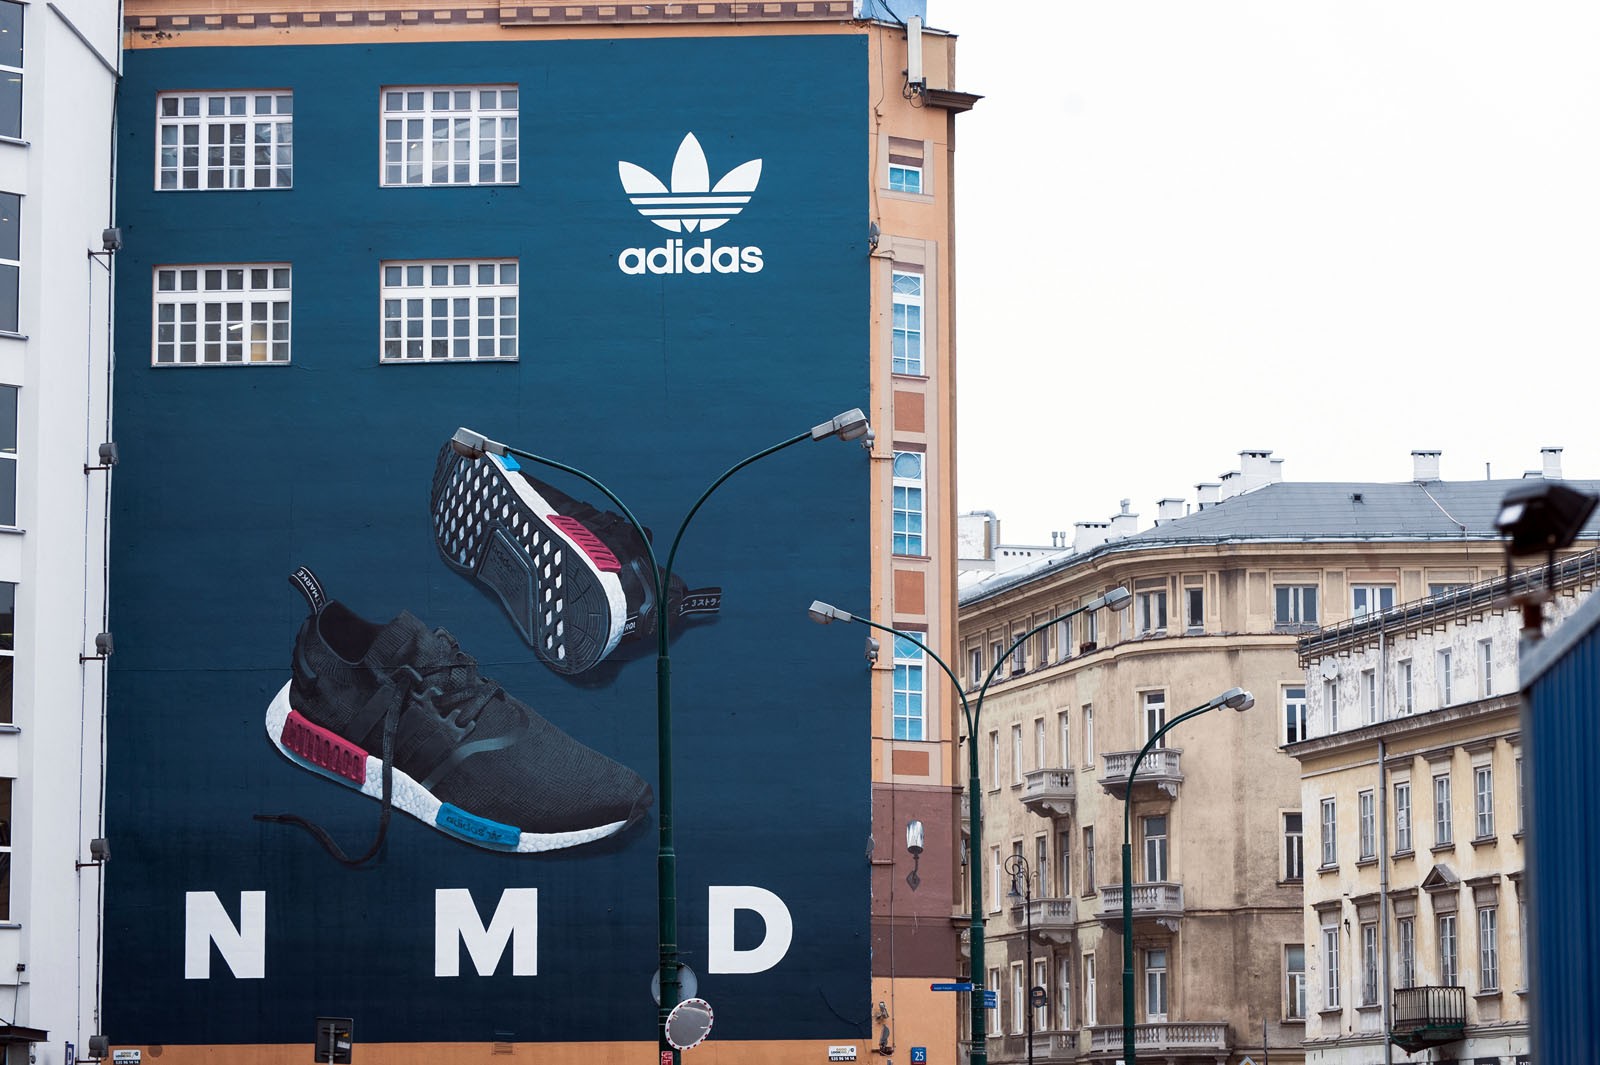 Mural reklamowy dla marki adidas w Warszawie na ulicy Brackiej przed polską premierą butów NMD | muralowa reklama premiery NMD adidas Originals | Portfolio